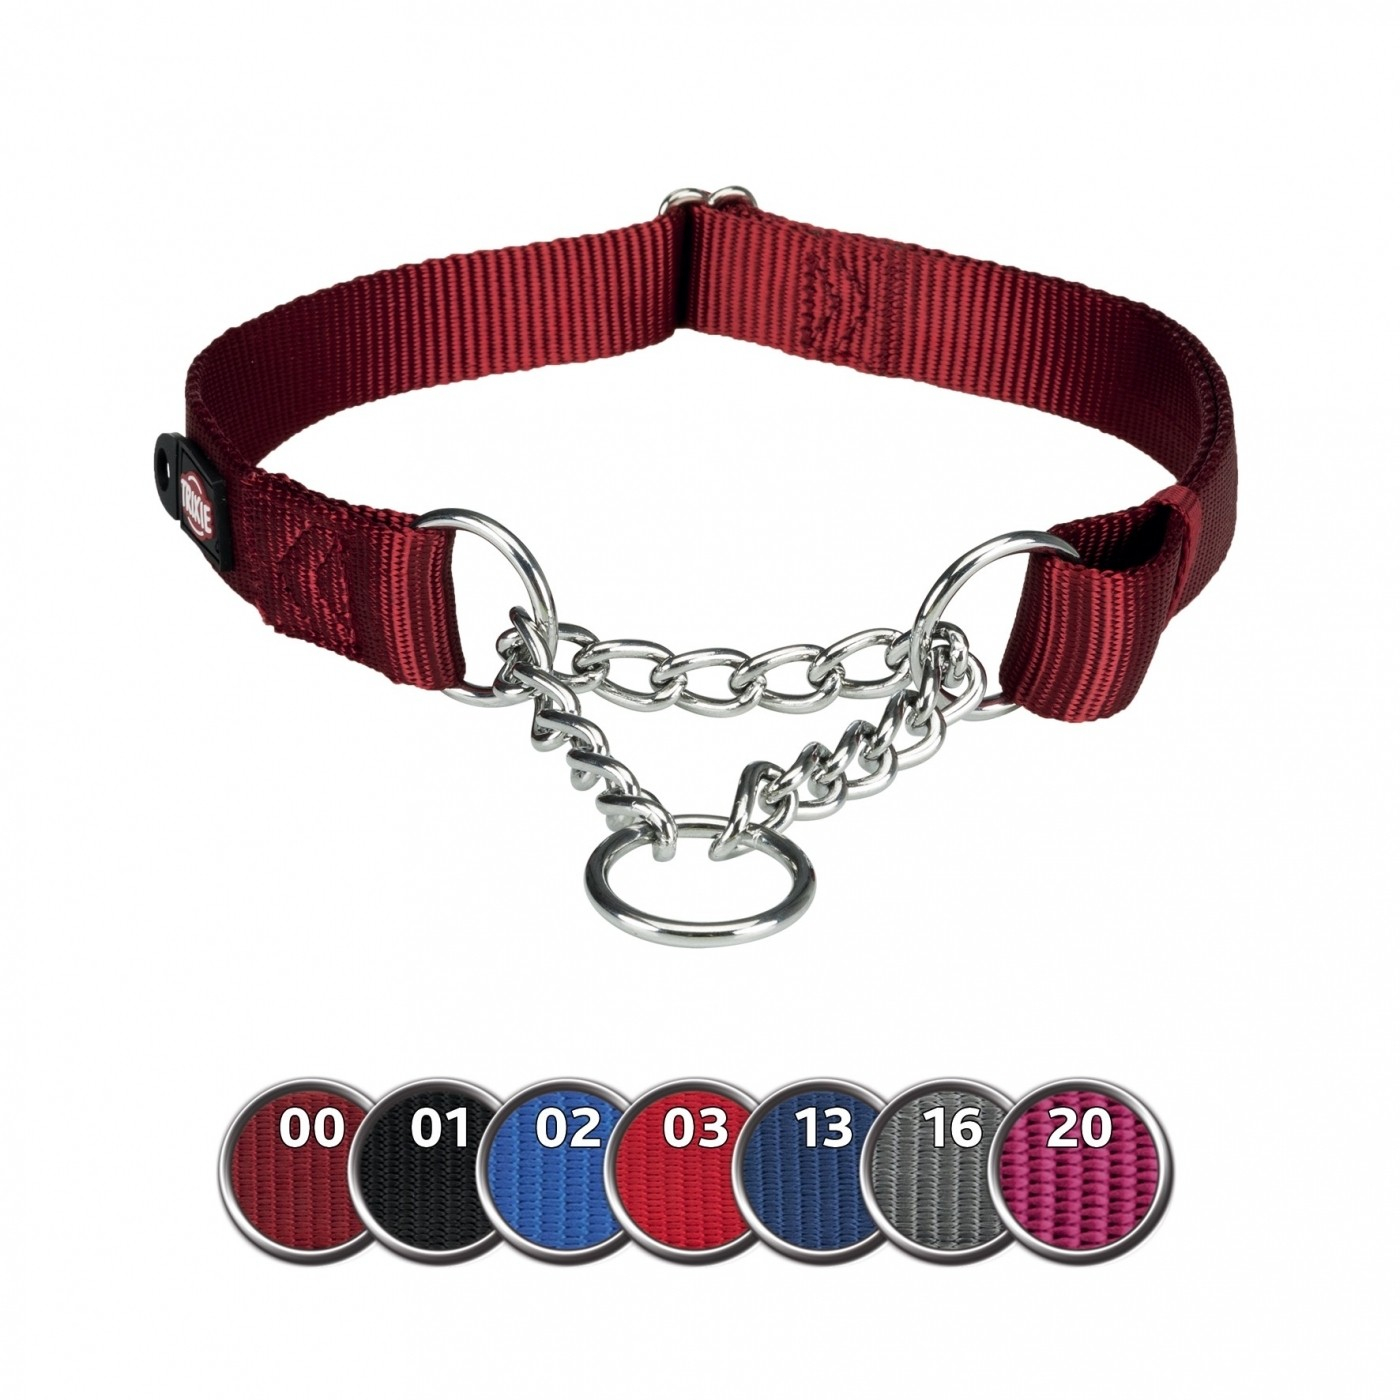 Zug-Stopp-Halsband Premium rot